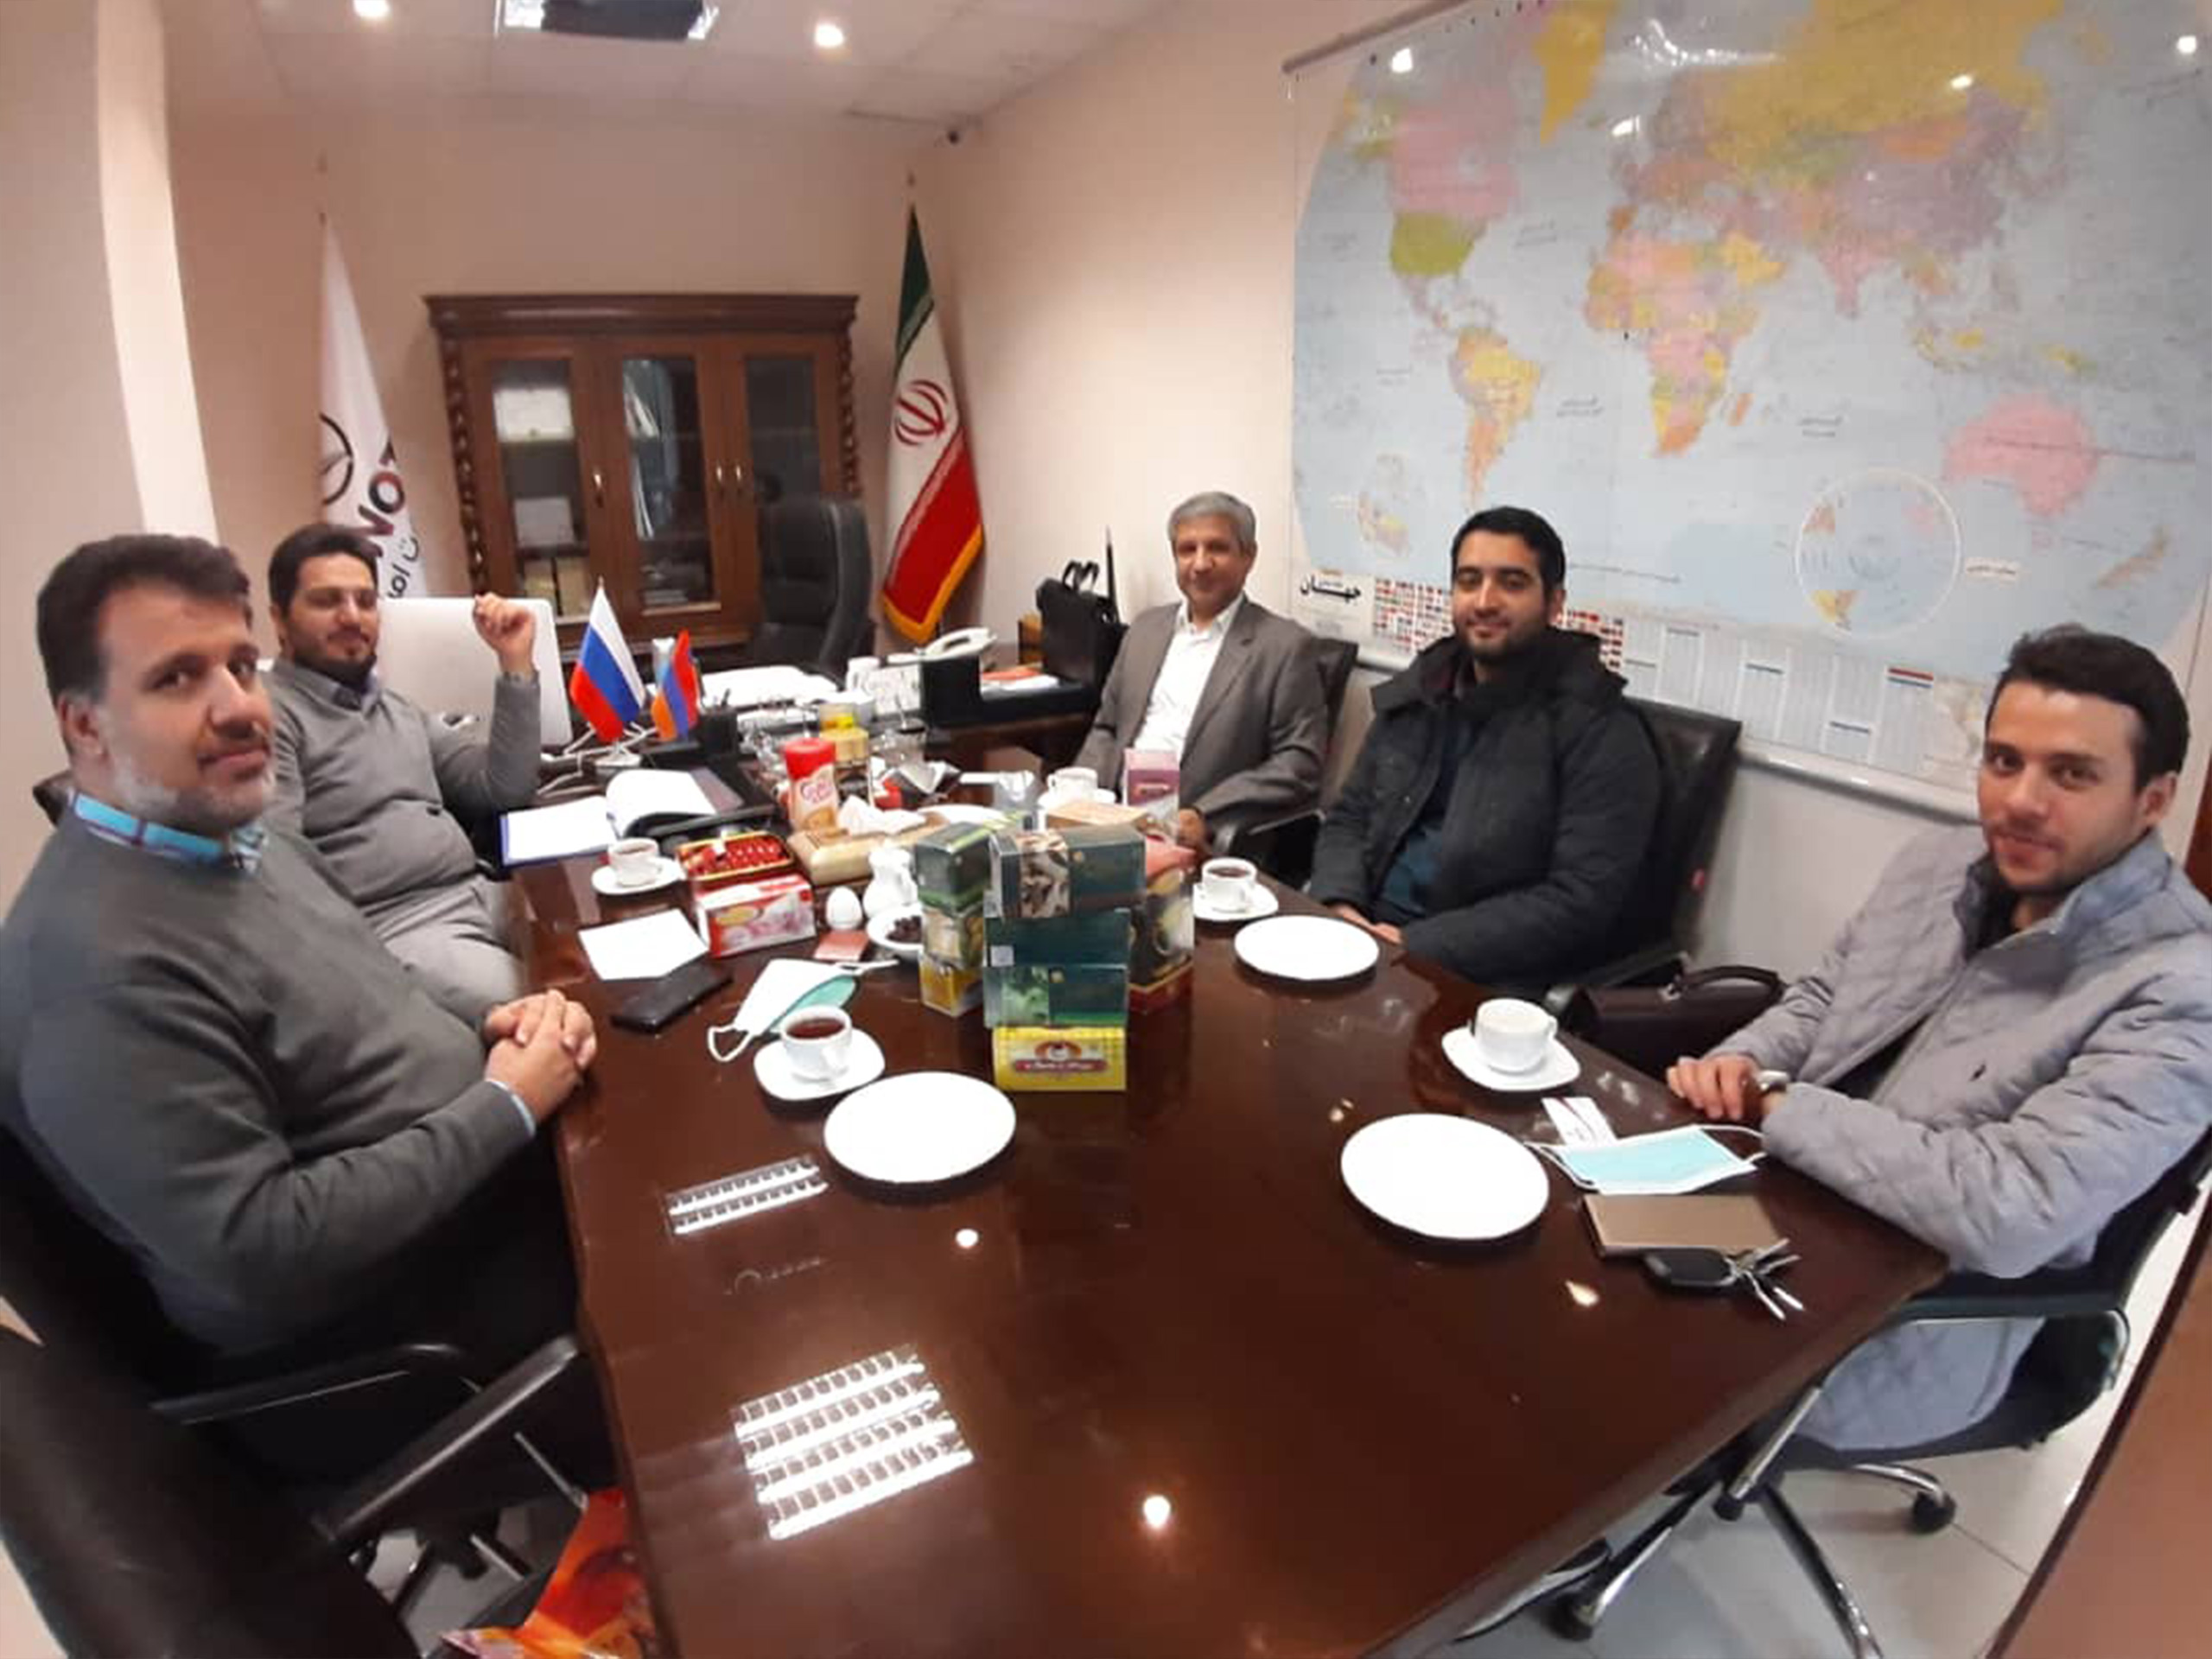 نشست با جناب آقای صالحی مدیر عامل چای زنبق اتفاق آقایان آدمی و رنگین کمان